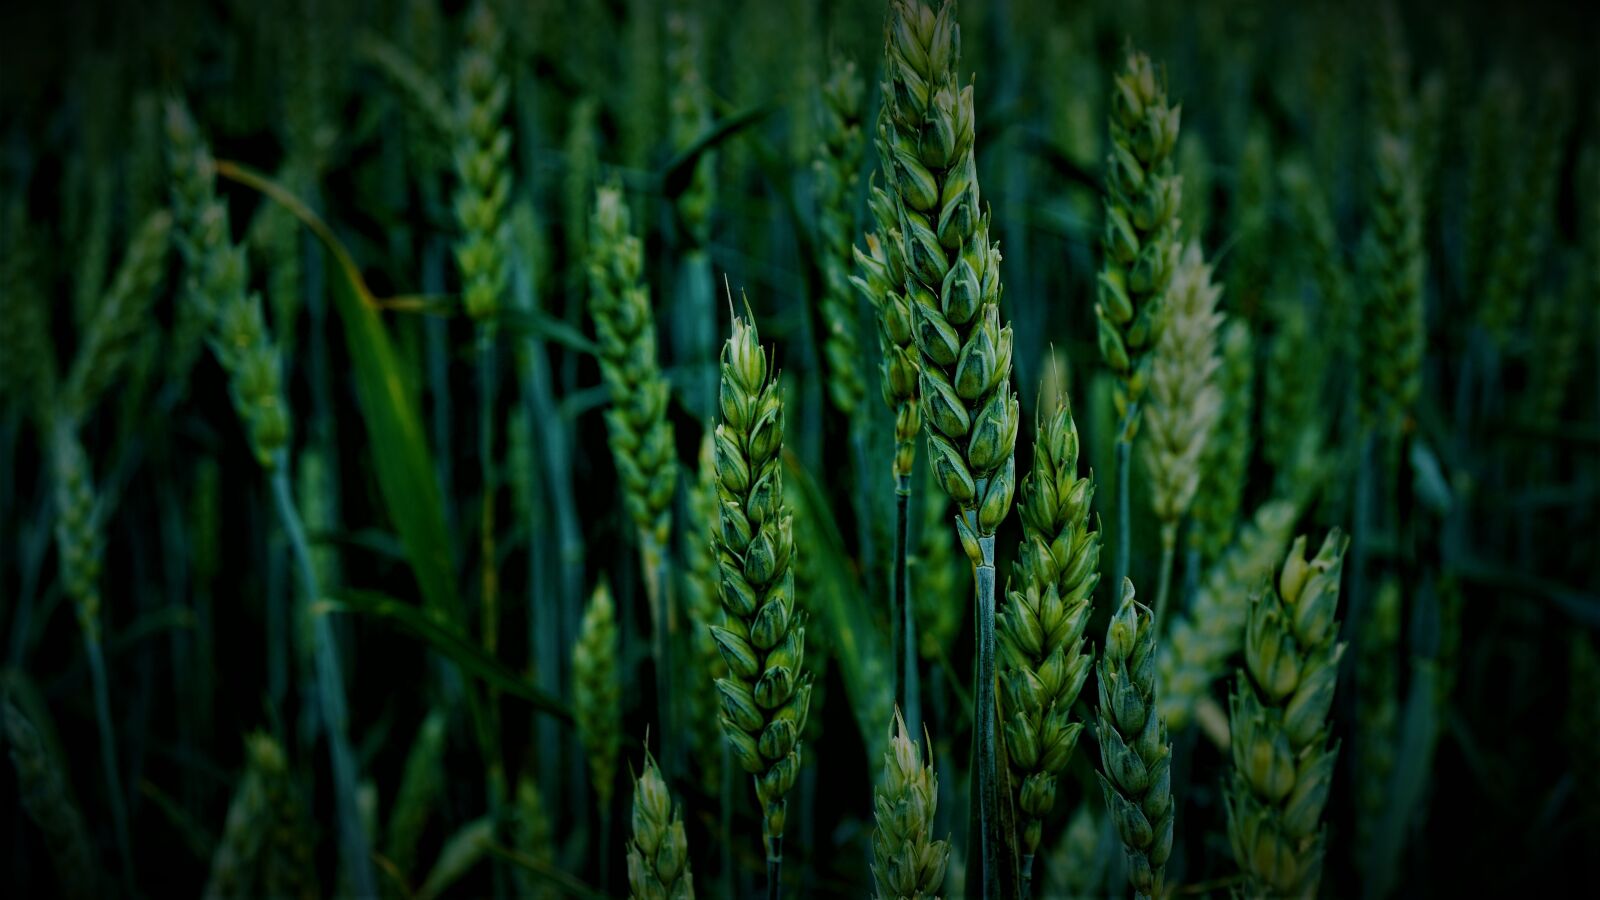 Sony a6000 + Sony E 30mm F3.5 Macro sample photo. Wheat, cereals, wheat field photography